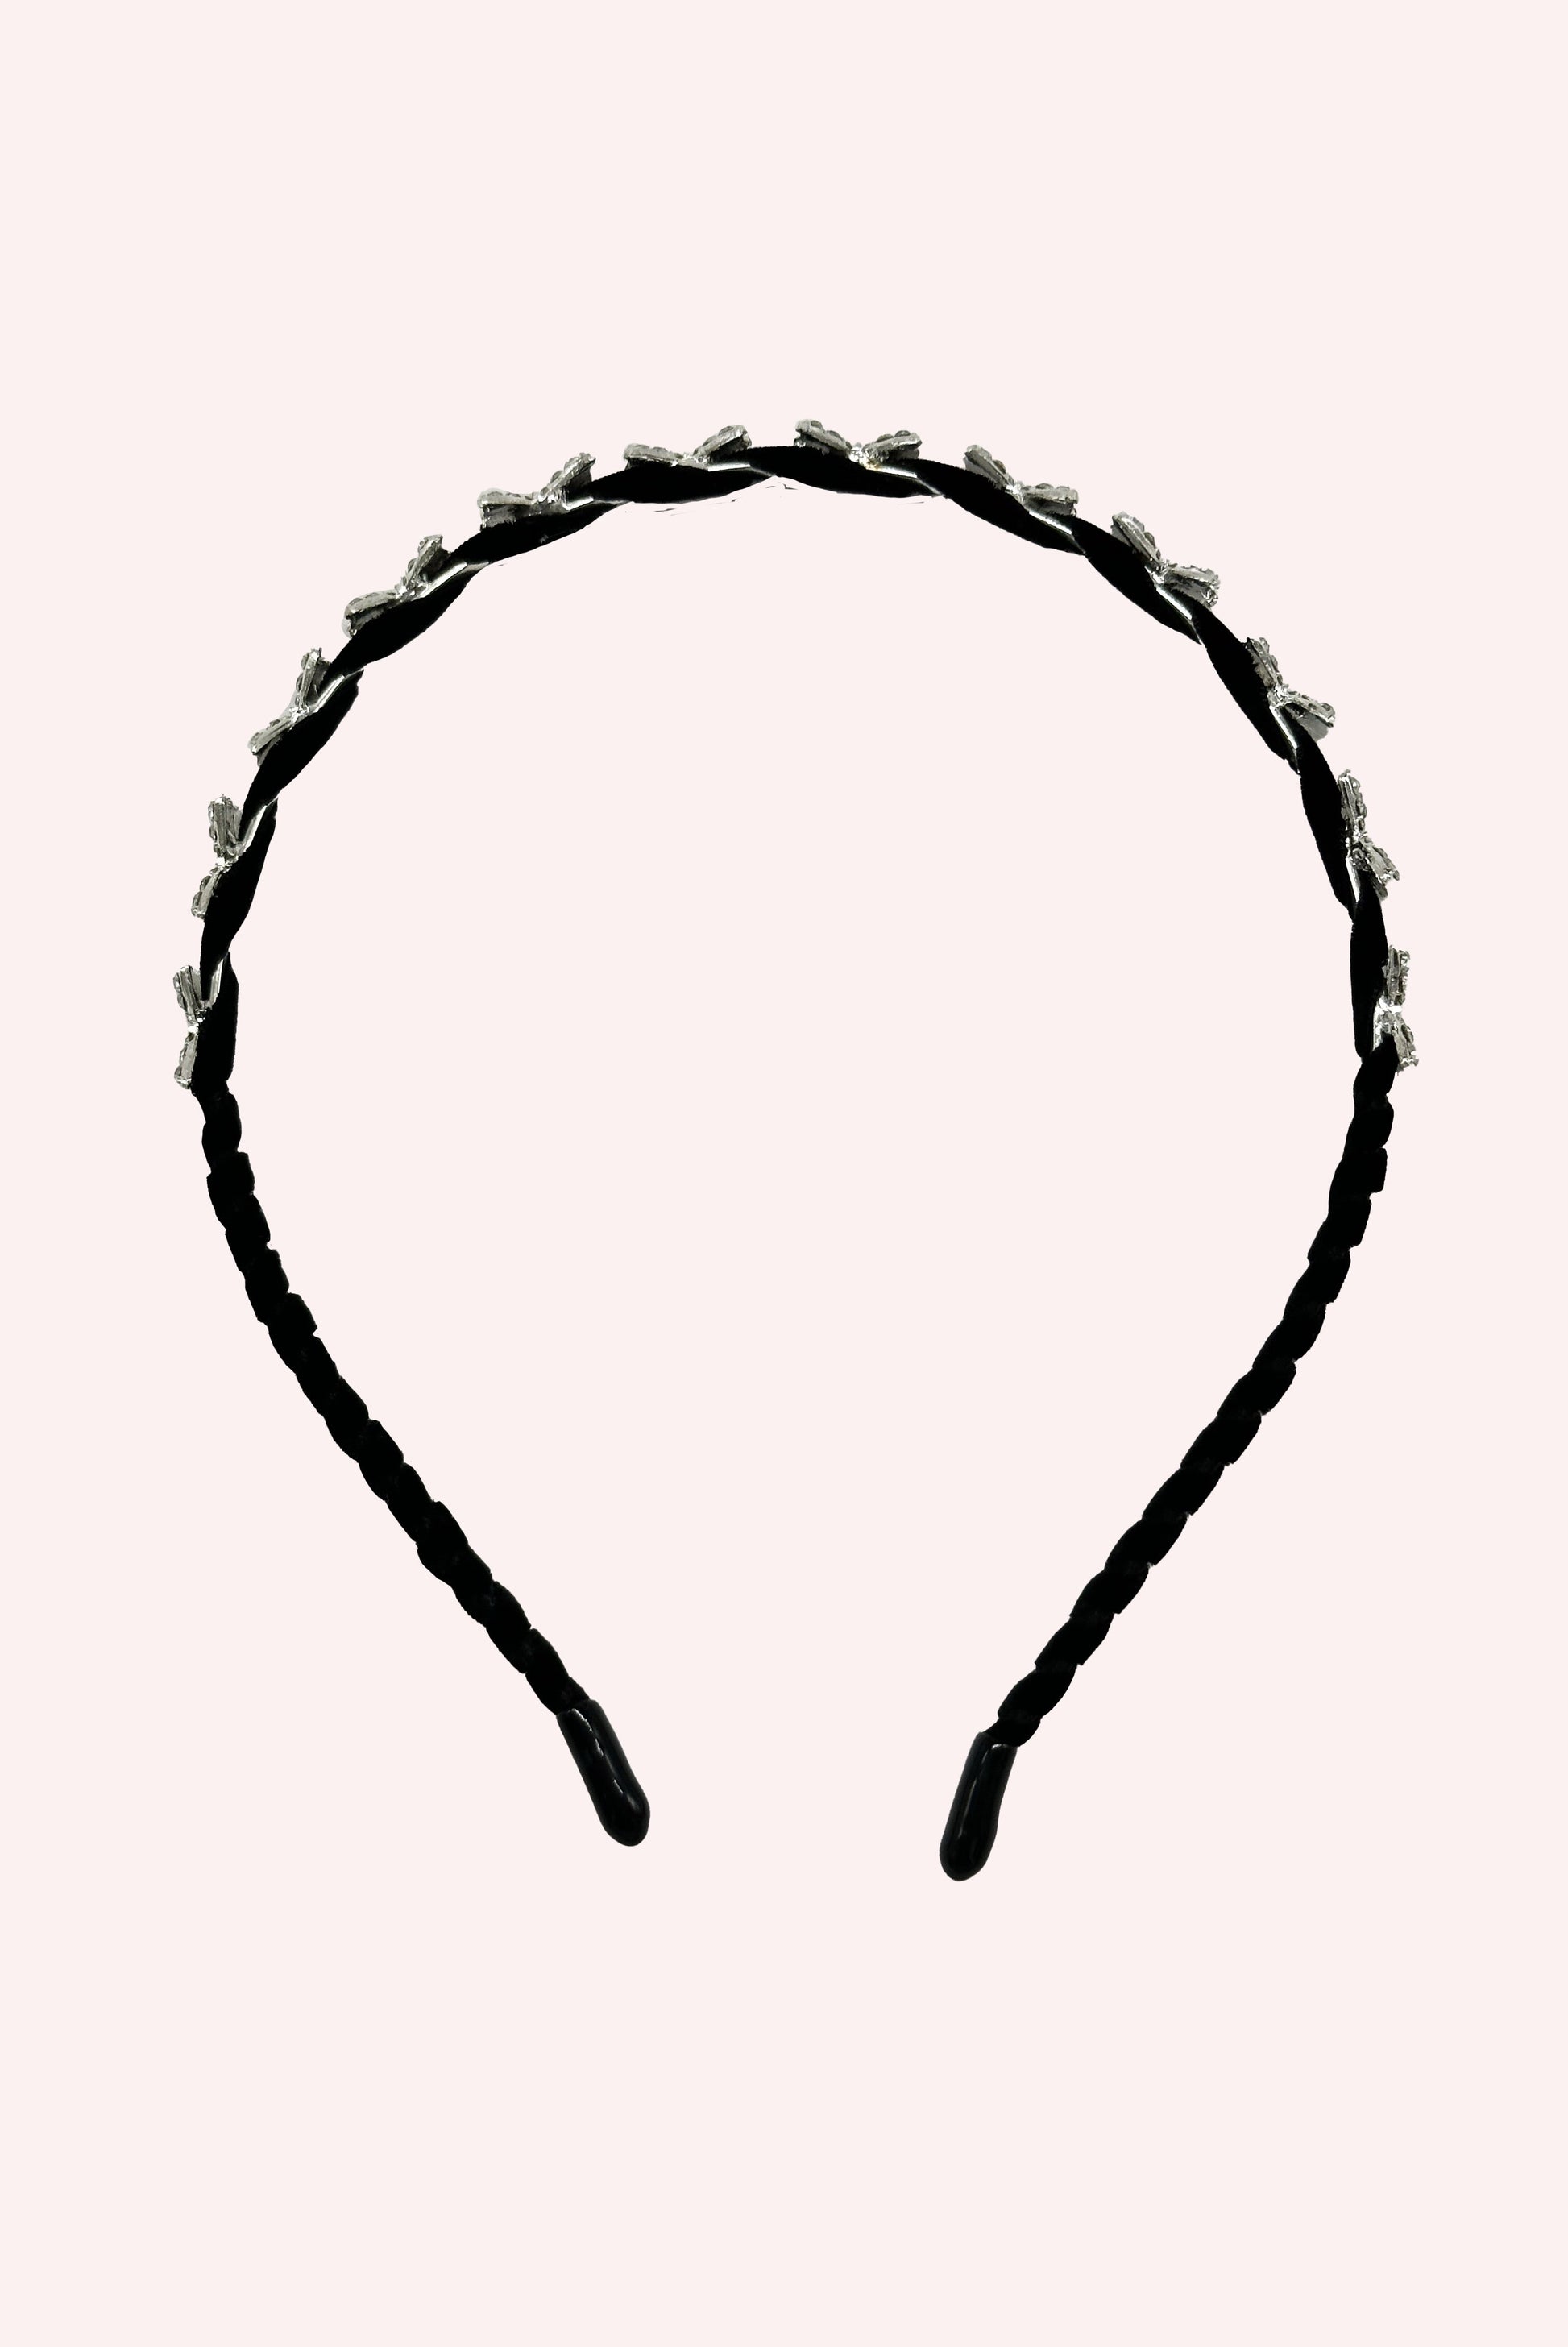 12 Baby Bows Headband, on Velvet braid like, in black